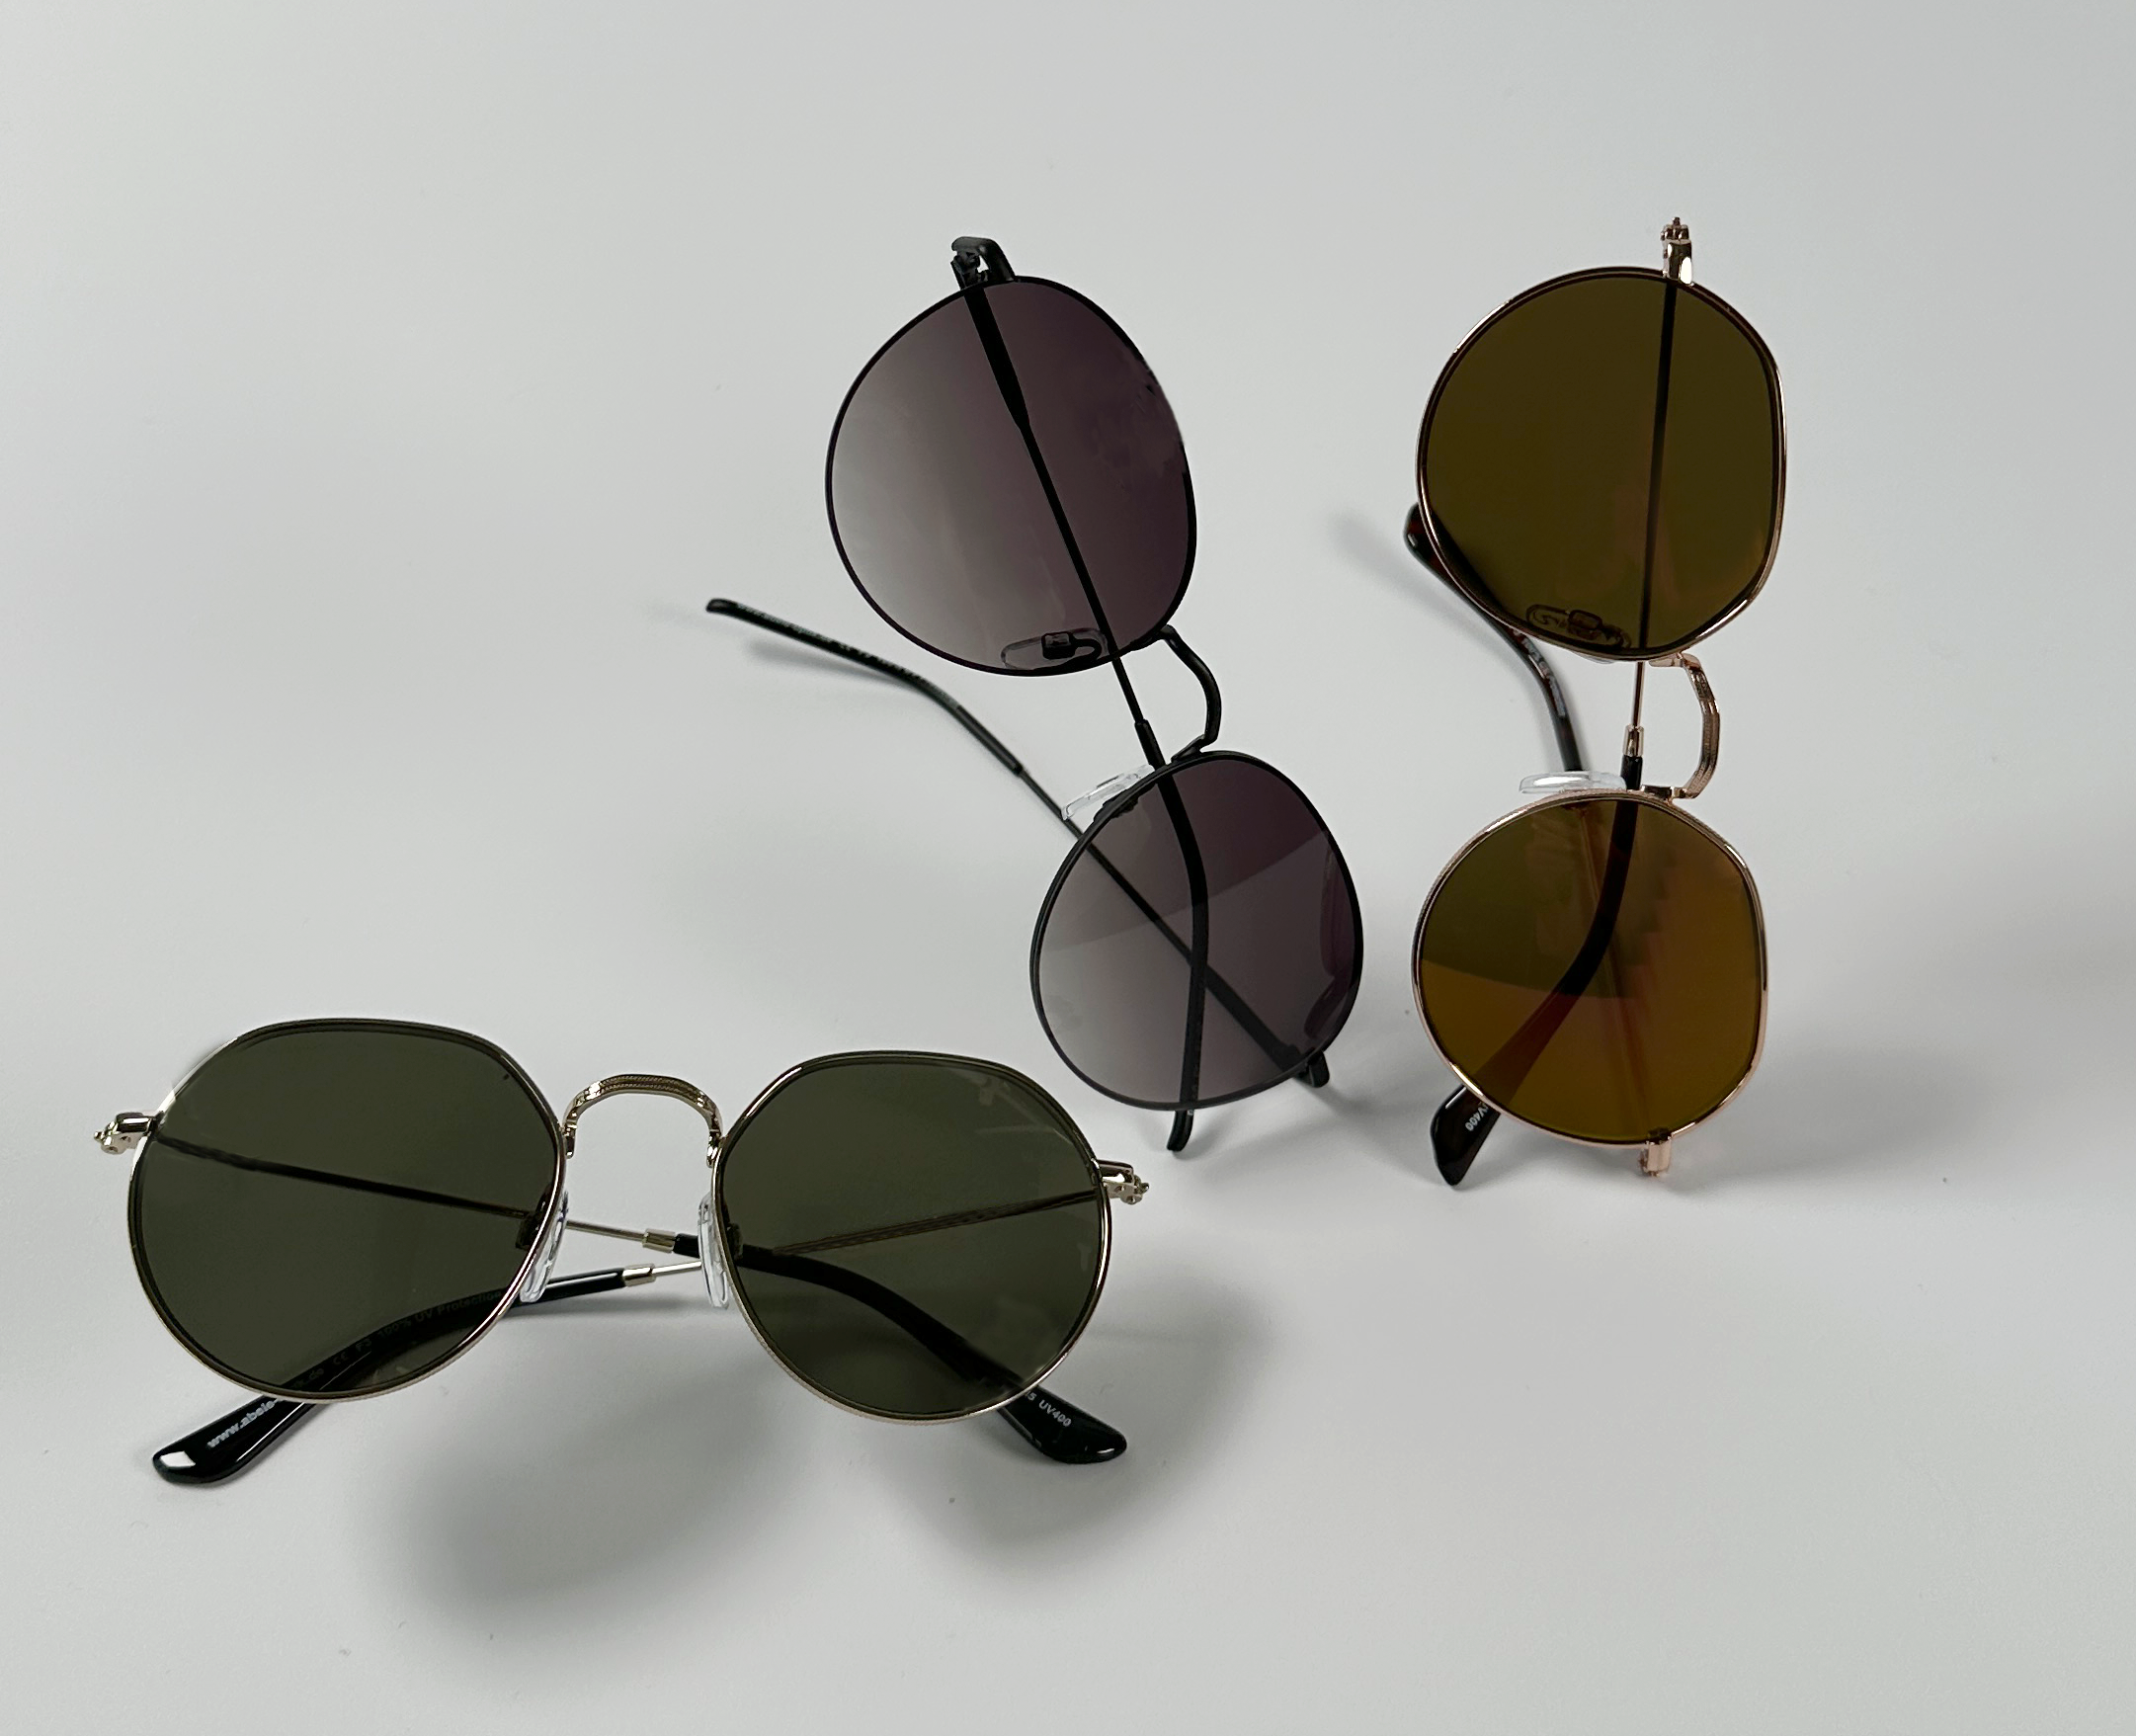 zu sehen sind drei Abele Optik Sonnenbrillen mit bunt getönten Gläsern (grün, braun, violett) vor weißem Hintergrund